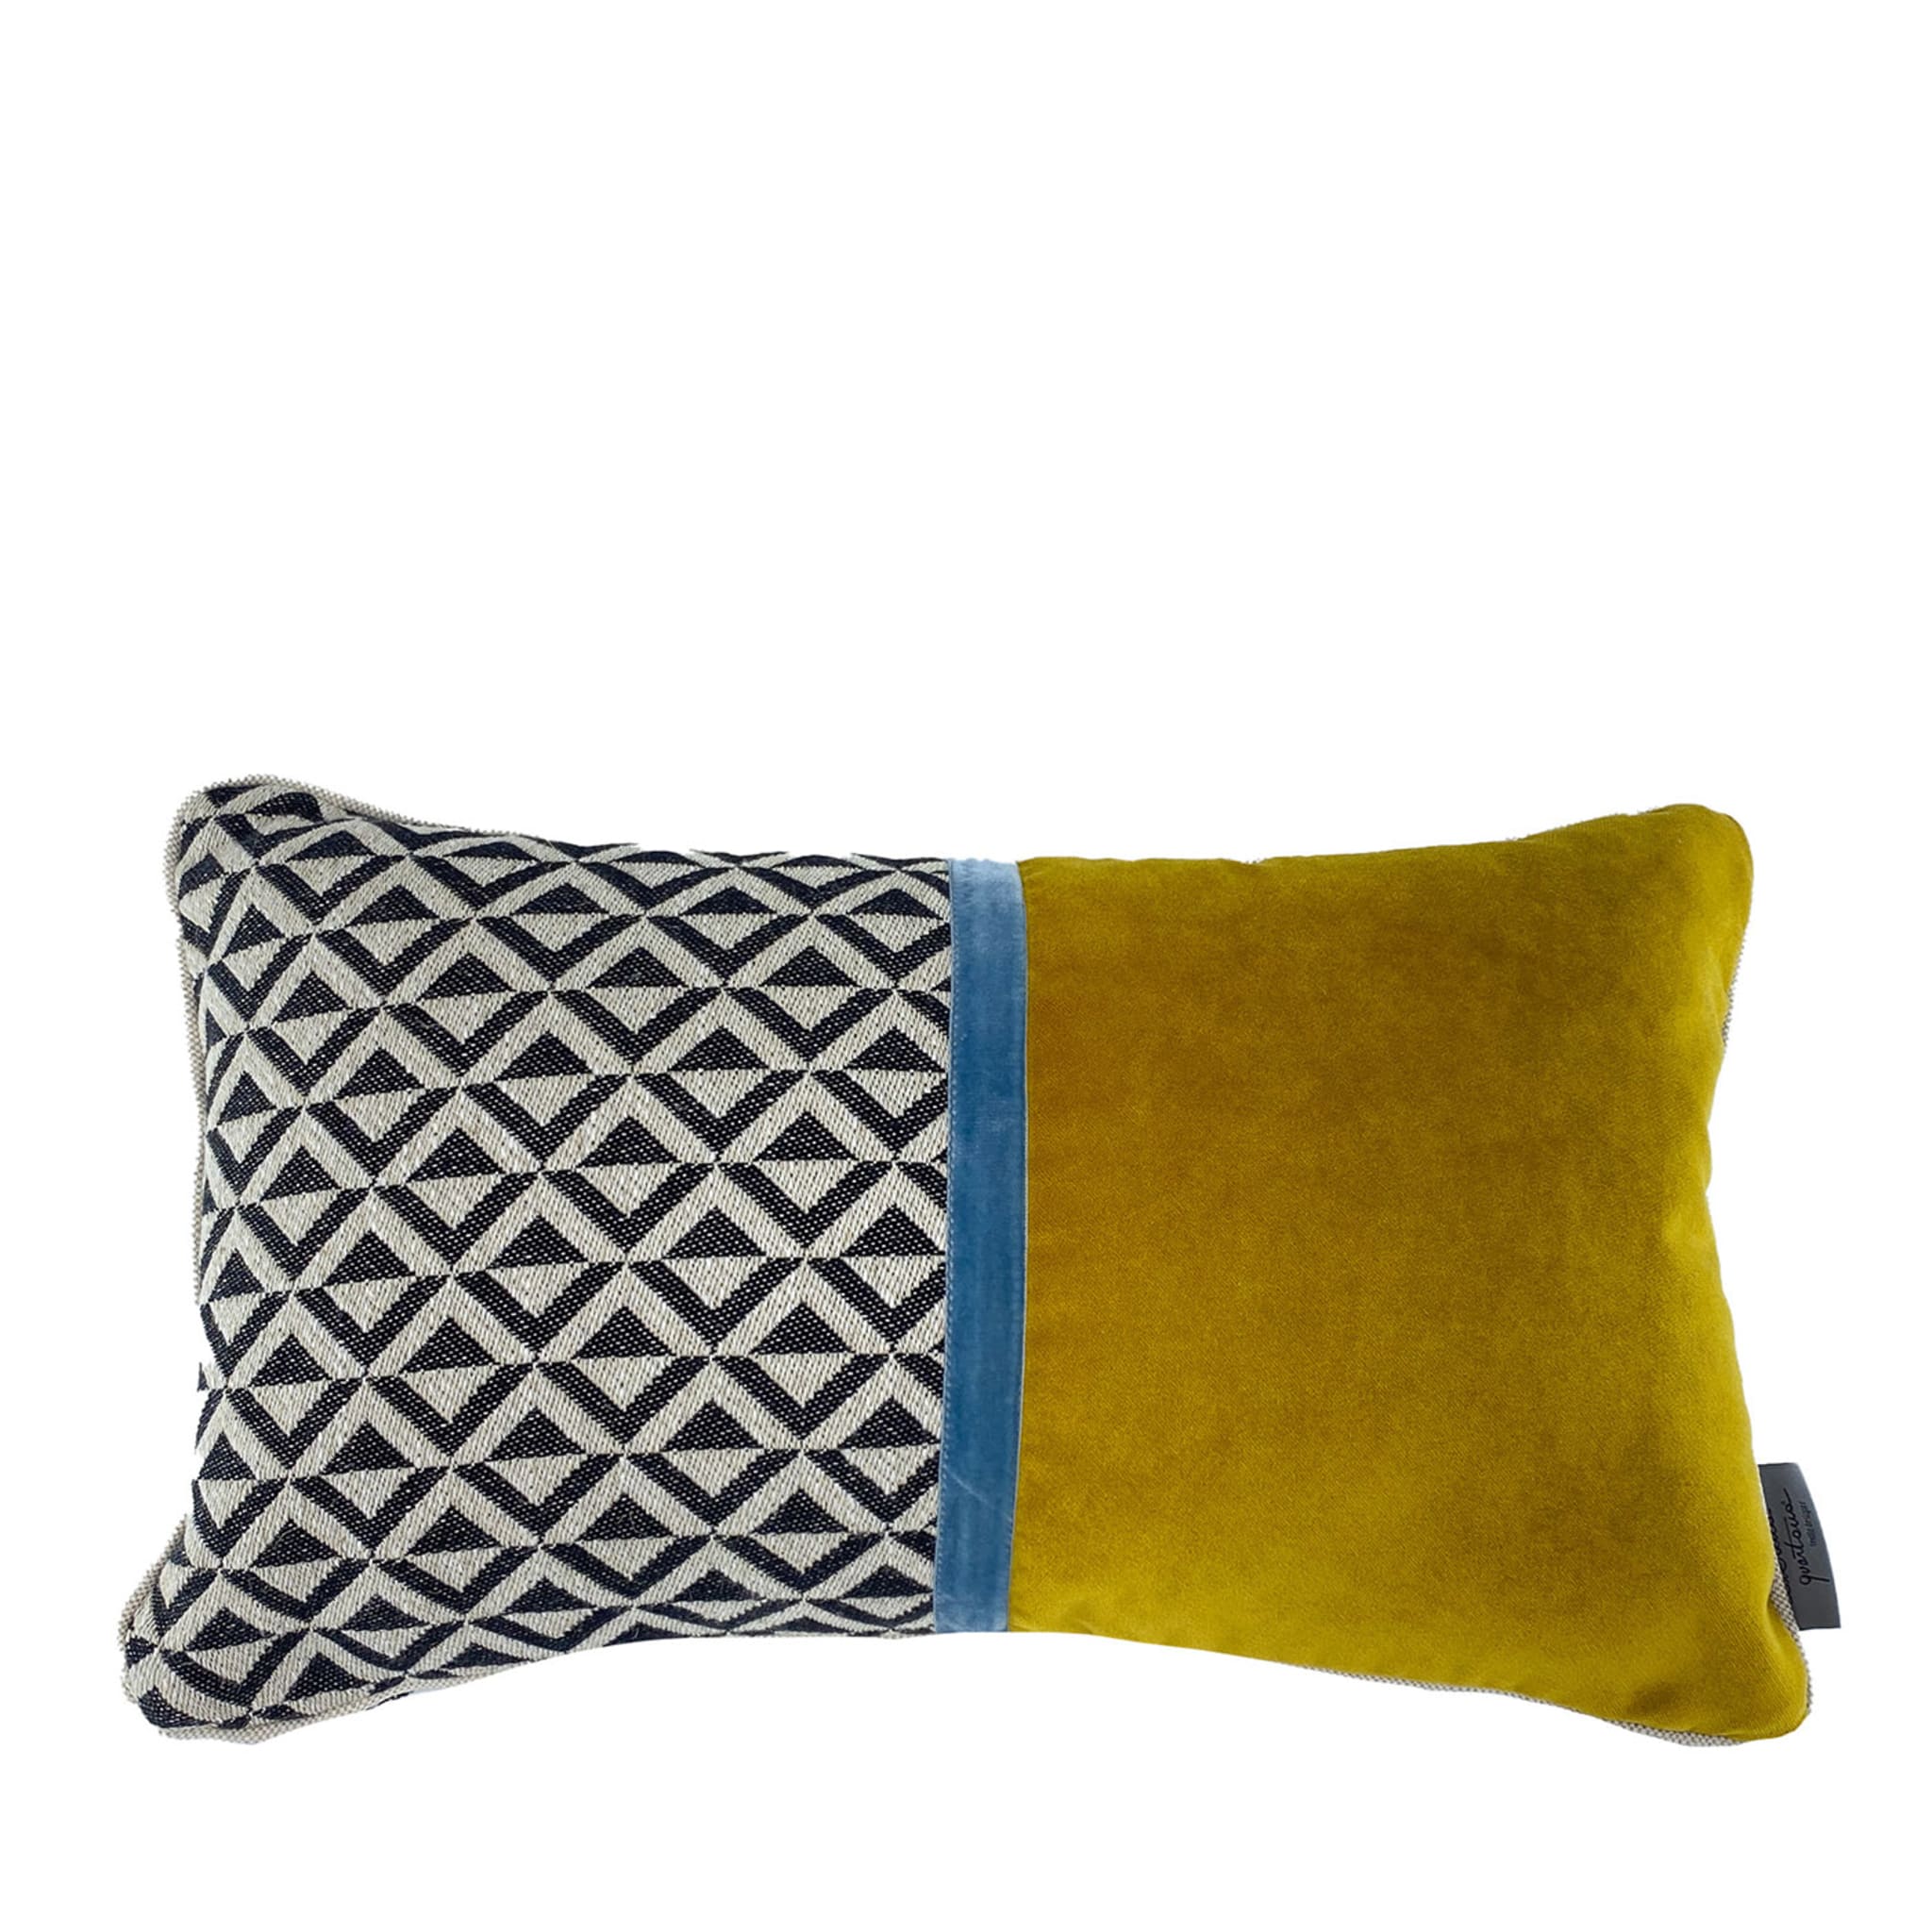 Cuscino rettangolare Losanghe con motivo nero e bianco/giallo